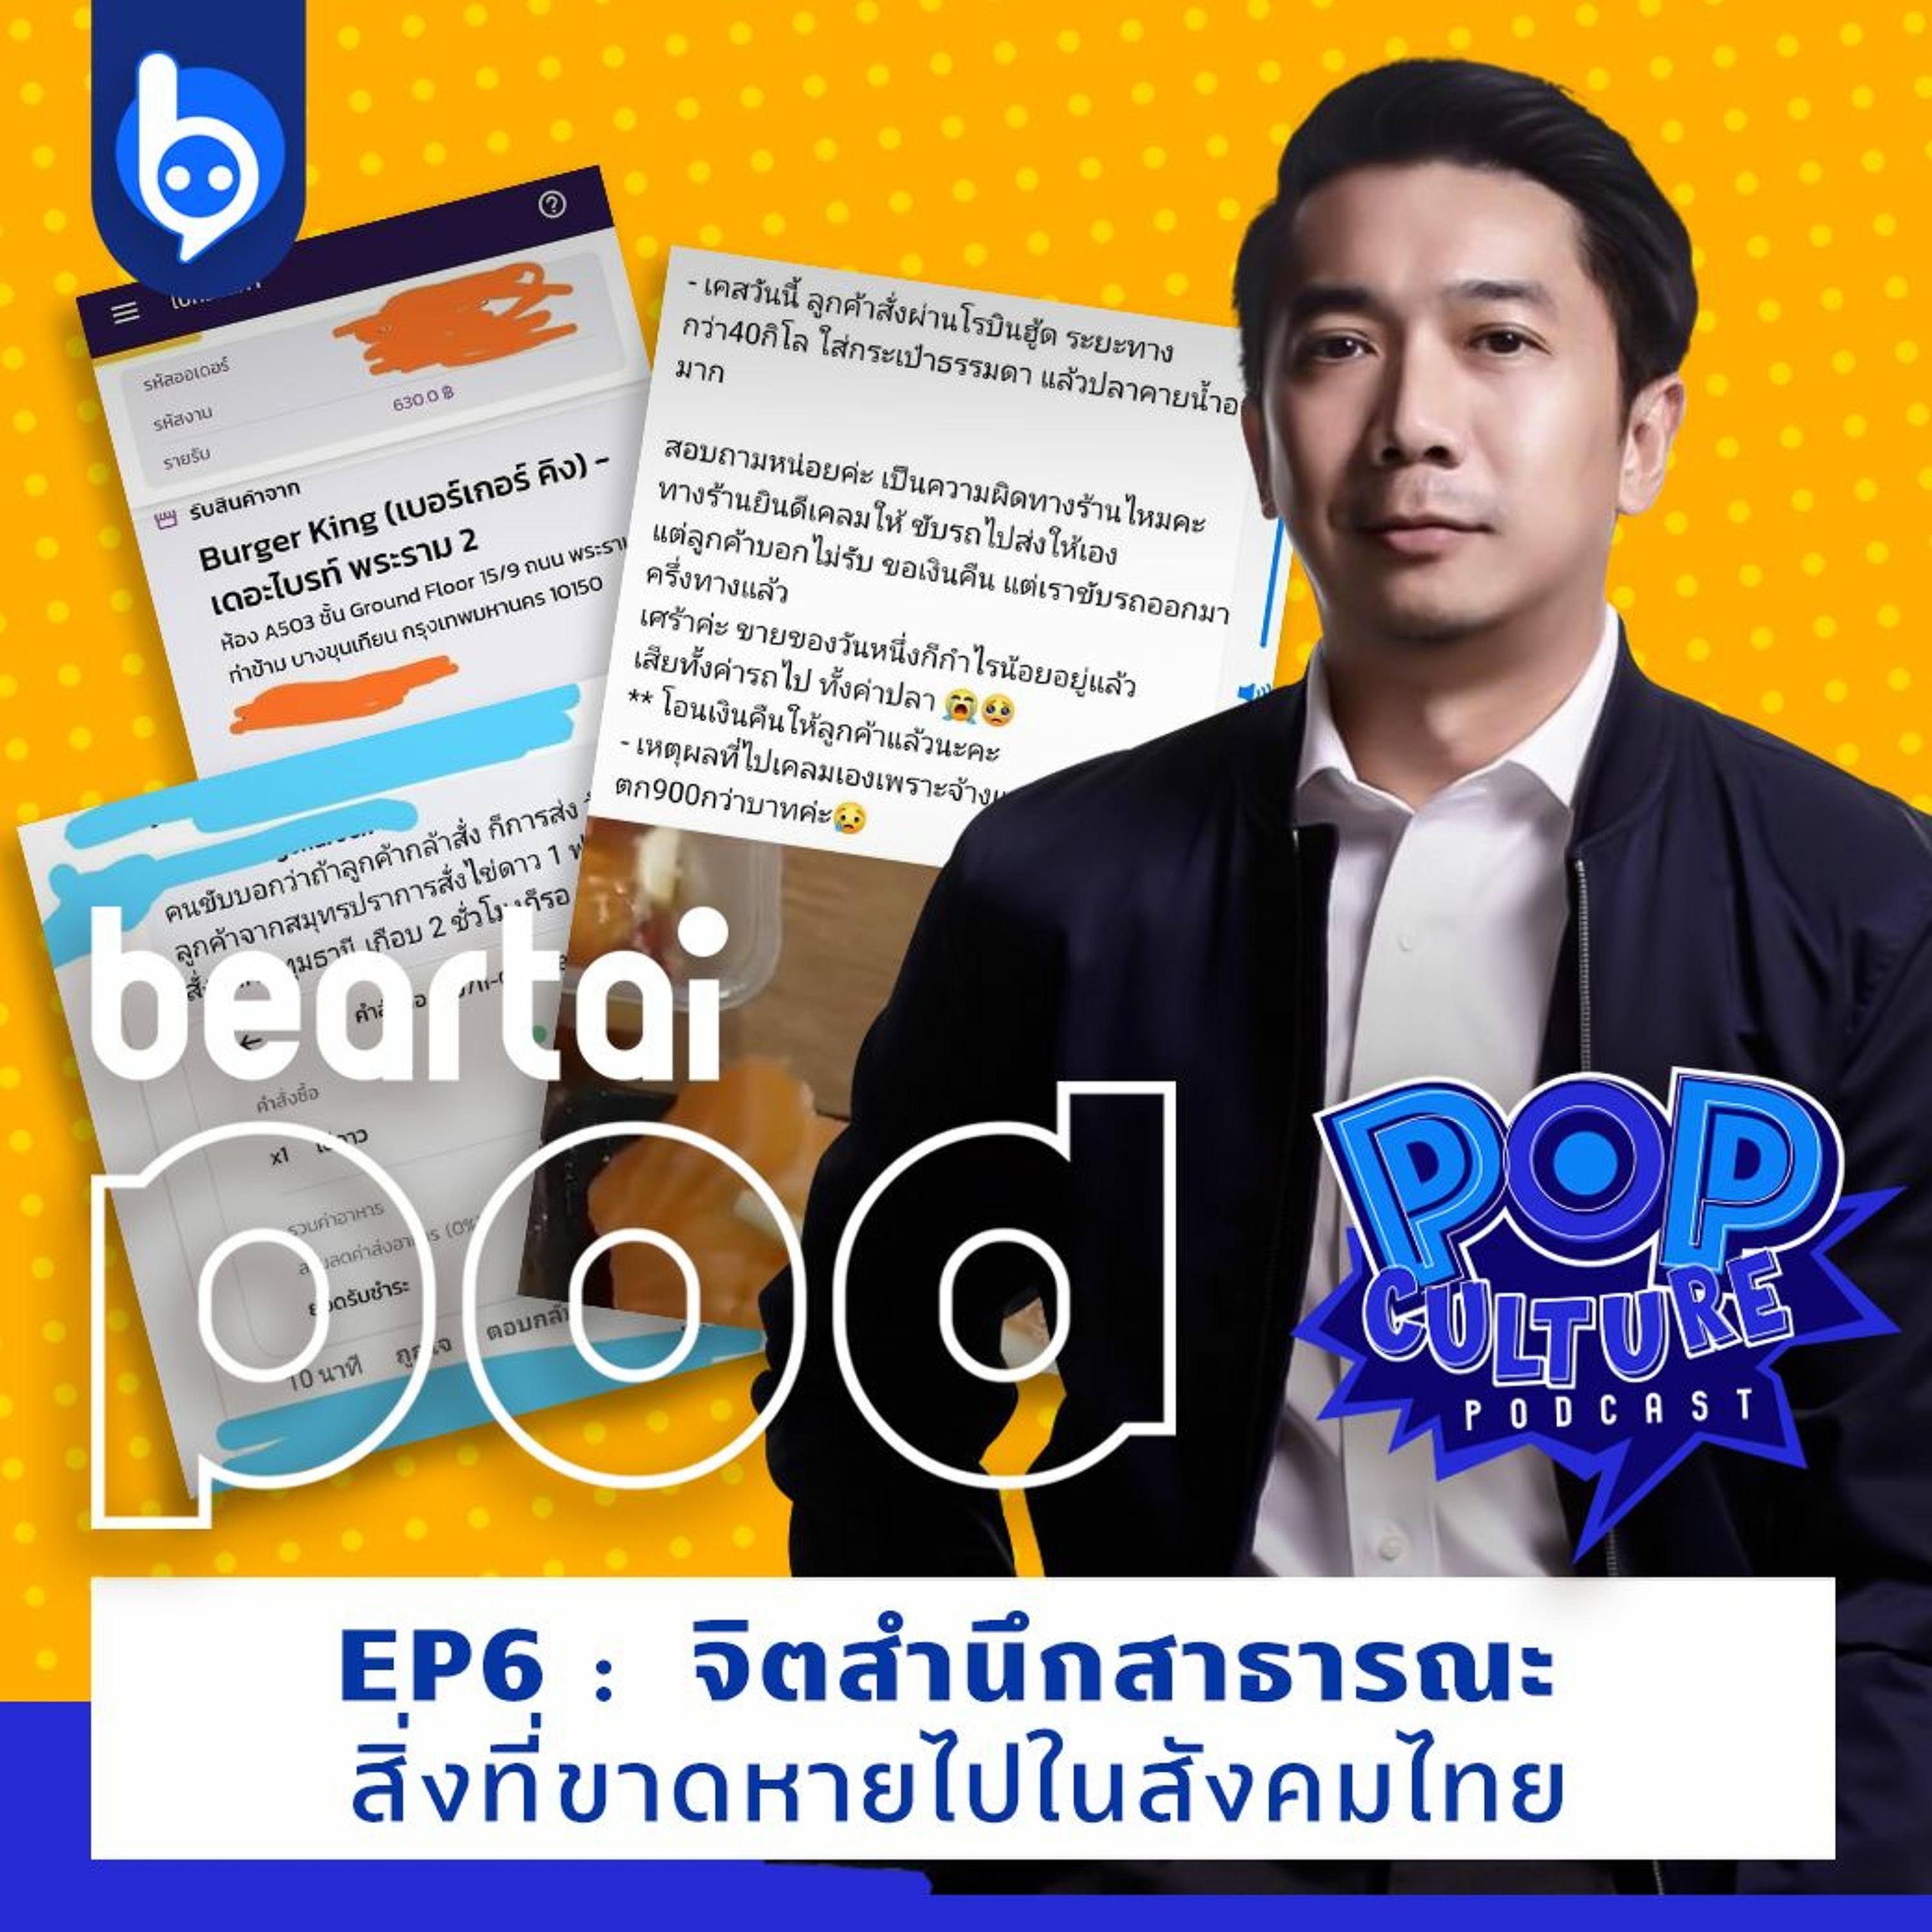 Pop Culture Podcast EP6 : จิตสำนึกสาธารณะ สิ่งที่ขาดหายไปในสังคมไทย